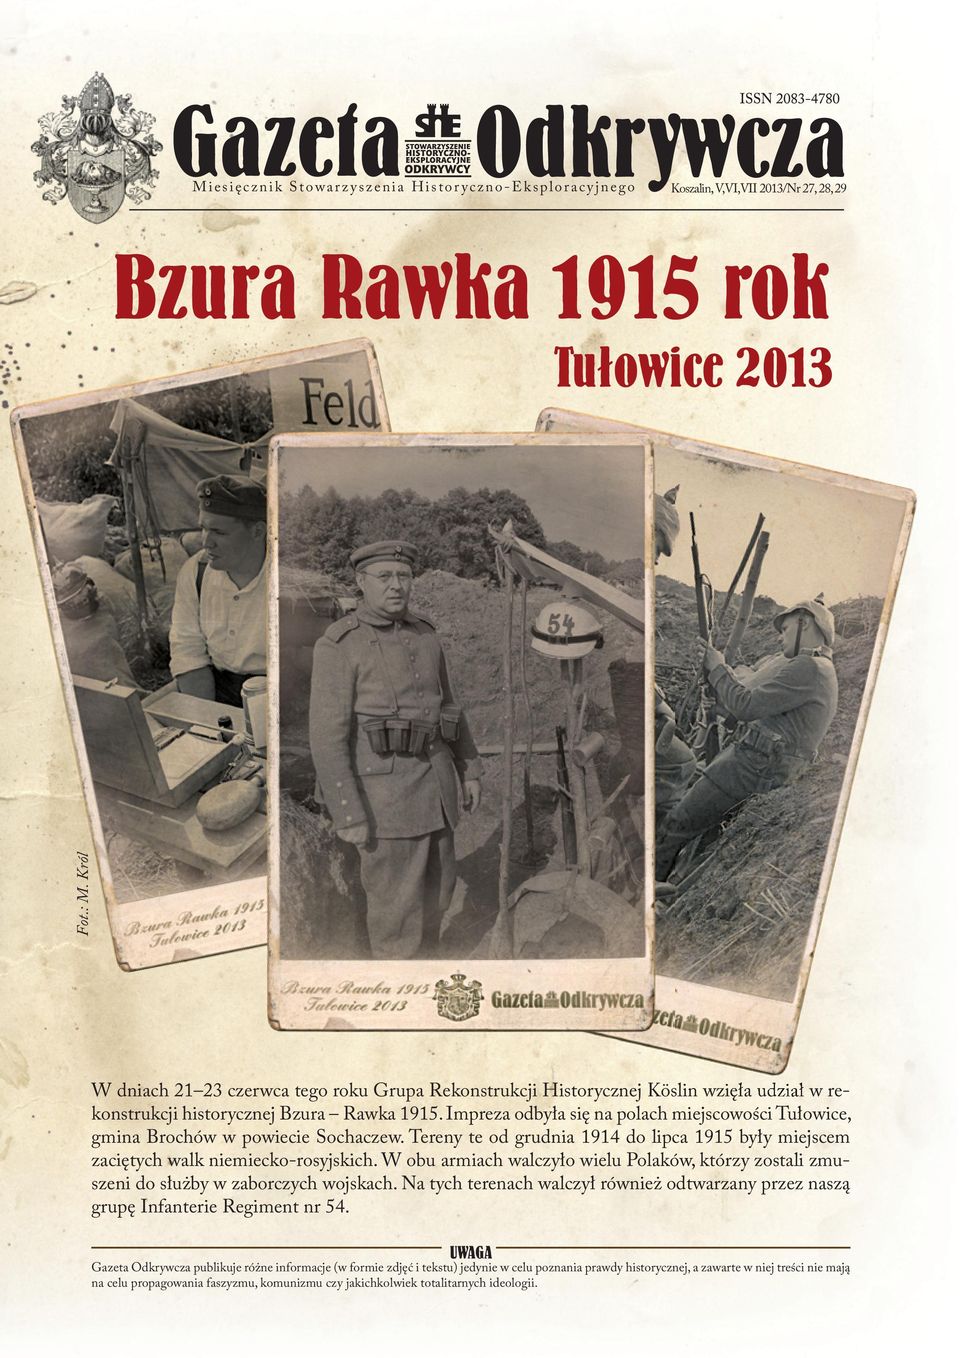 Impreza odbyła się na polach miejscowości Tułowice, gmina Brochów w powiecie Sochaczew. Tereny te od grudnia 1914 do lipca 1915 były miejscem zaciętych walk niemiecko-rosyjskich.